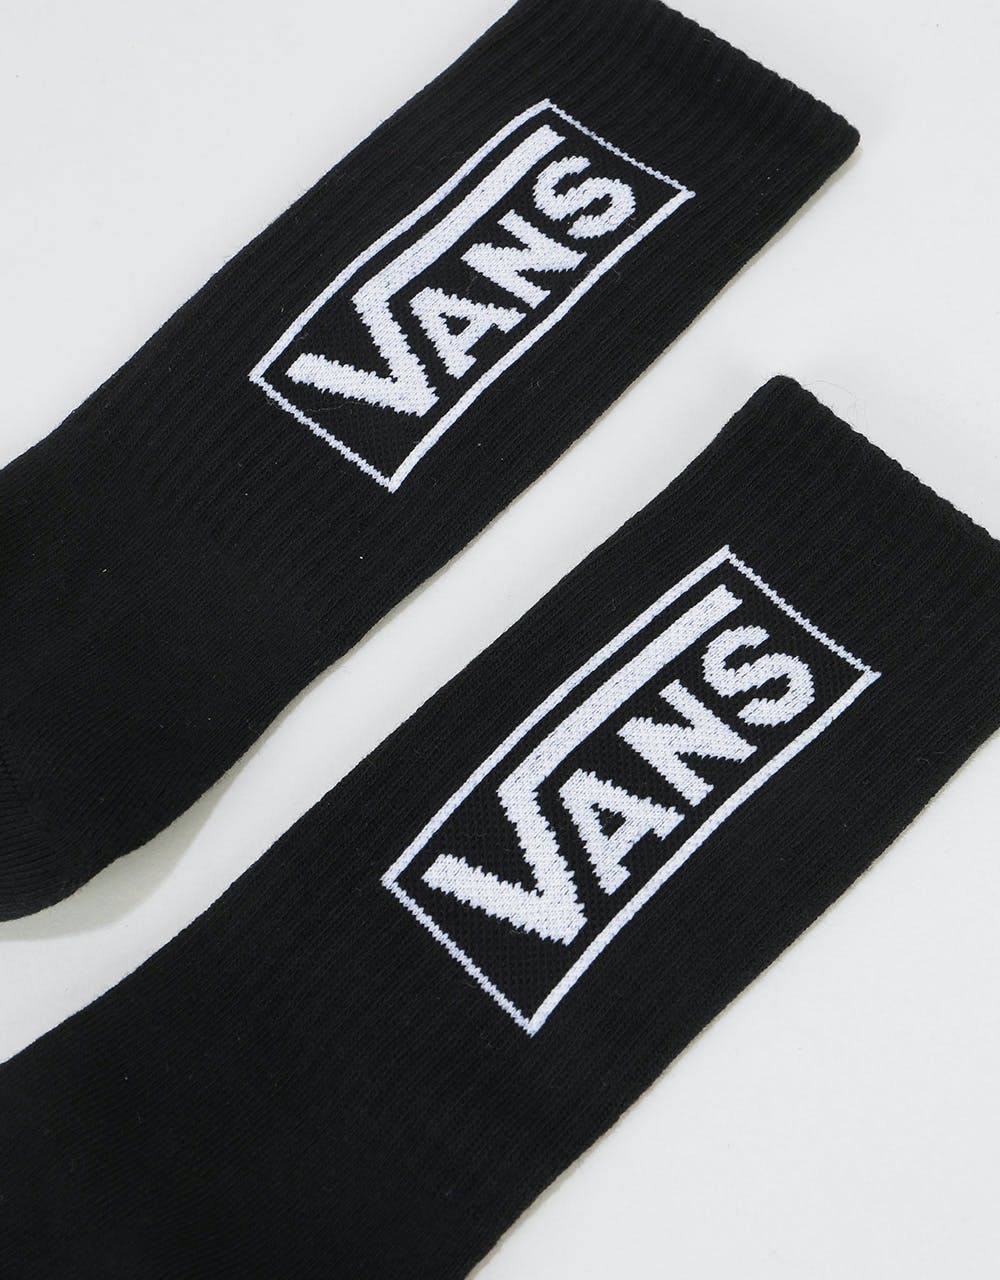 Vans Distort Crew Socks - Black